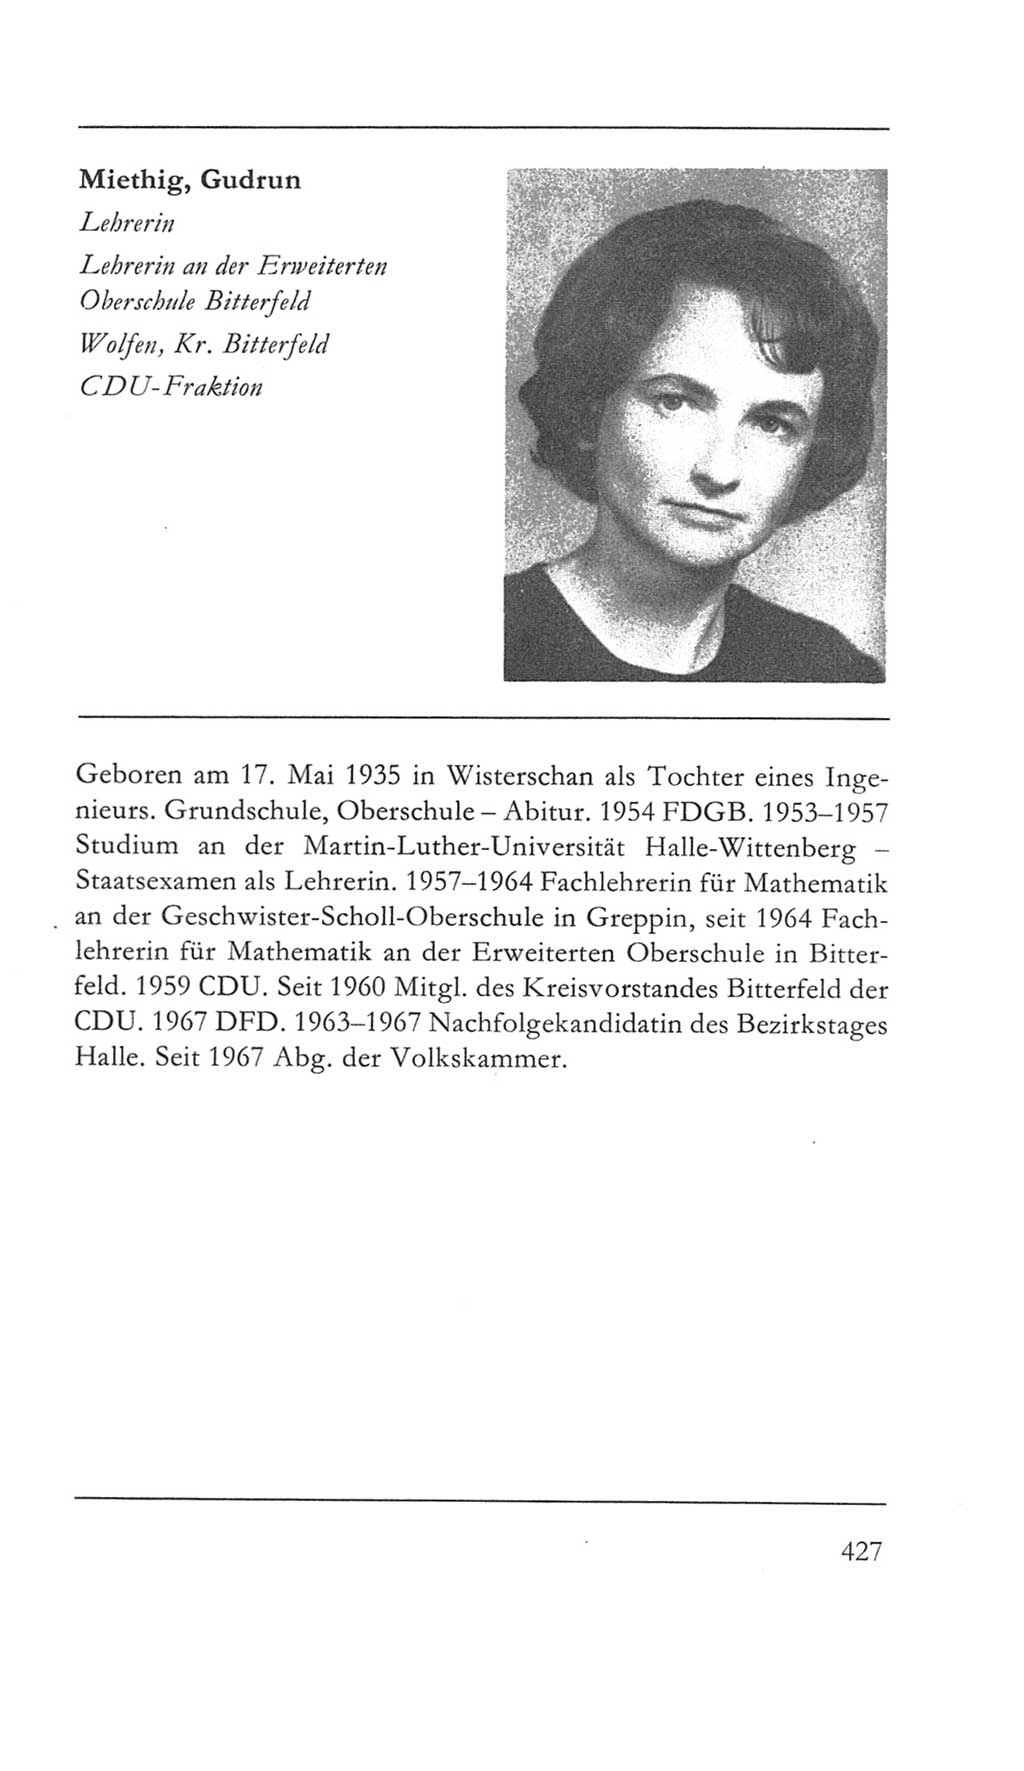 Volkskammer (VK) der Deutschen Demokratischen Republik (DDR) 5. Wahlperiode 1967-1971, Seite 427 (VK. DDR 5. WP. 1967-1971, S. 427)